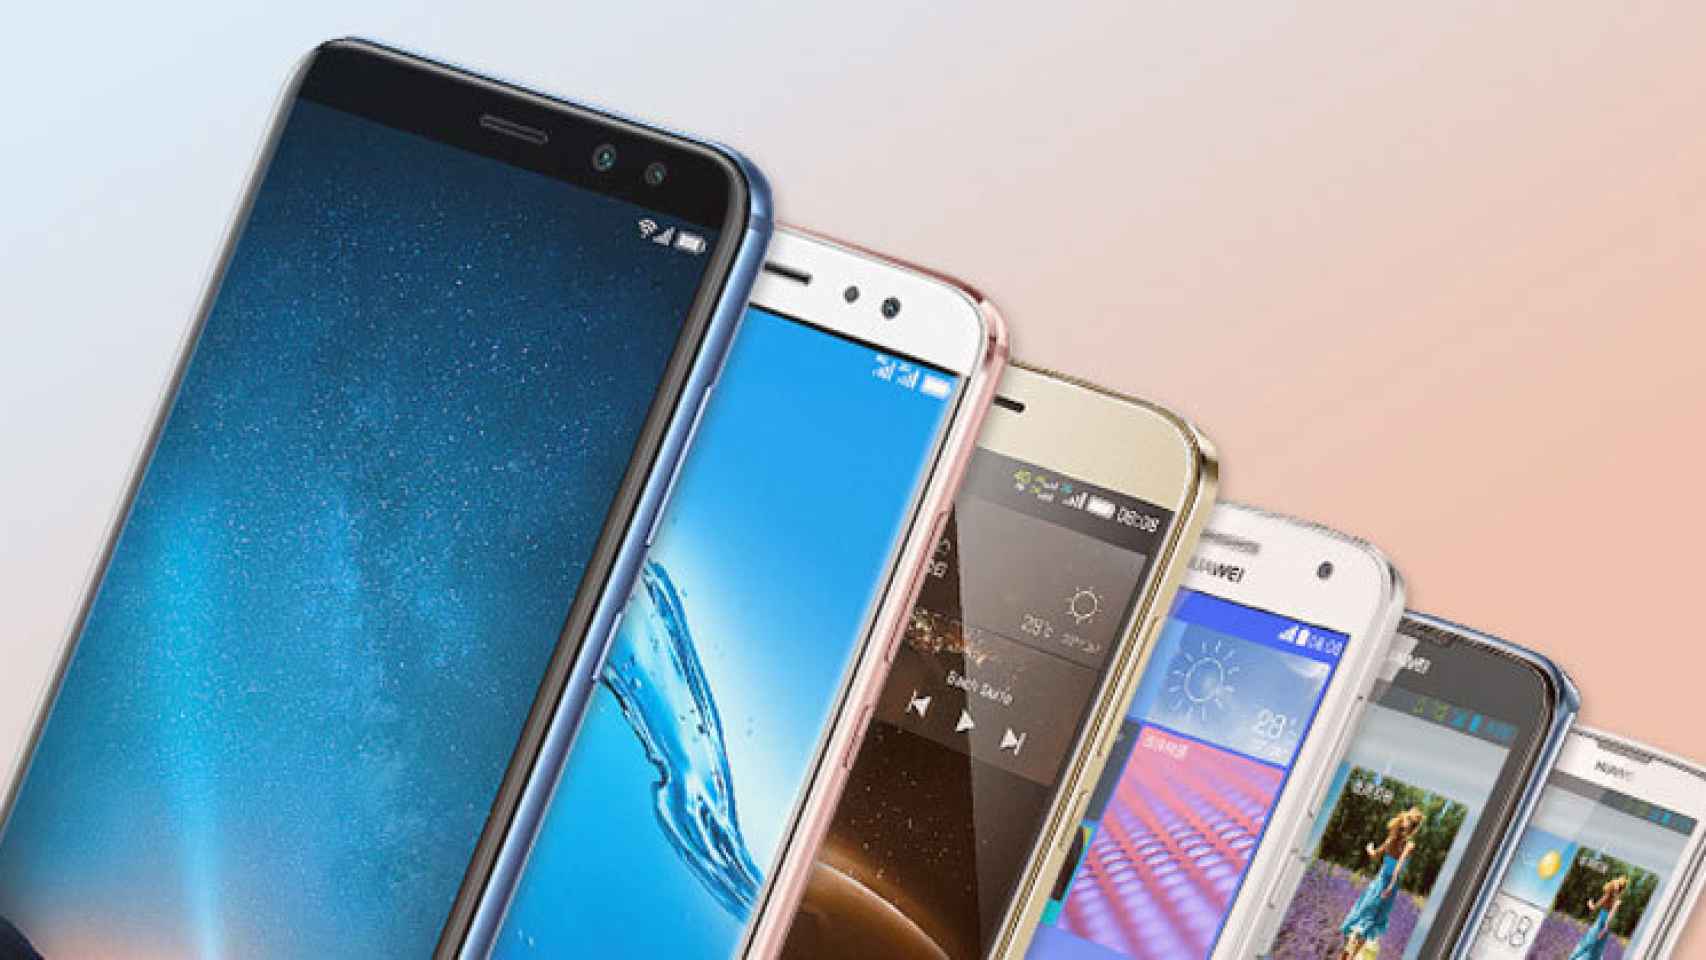 Huawei Maimang 6 (supuesto Mate 10 Lite) anunciado: cuatro cámaras en un smartphone